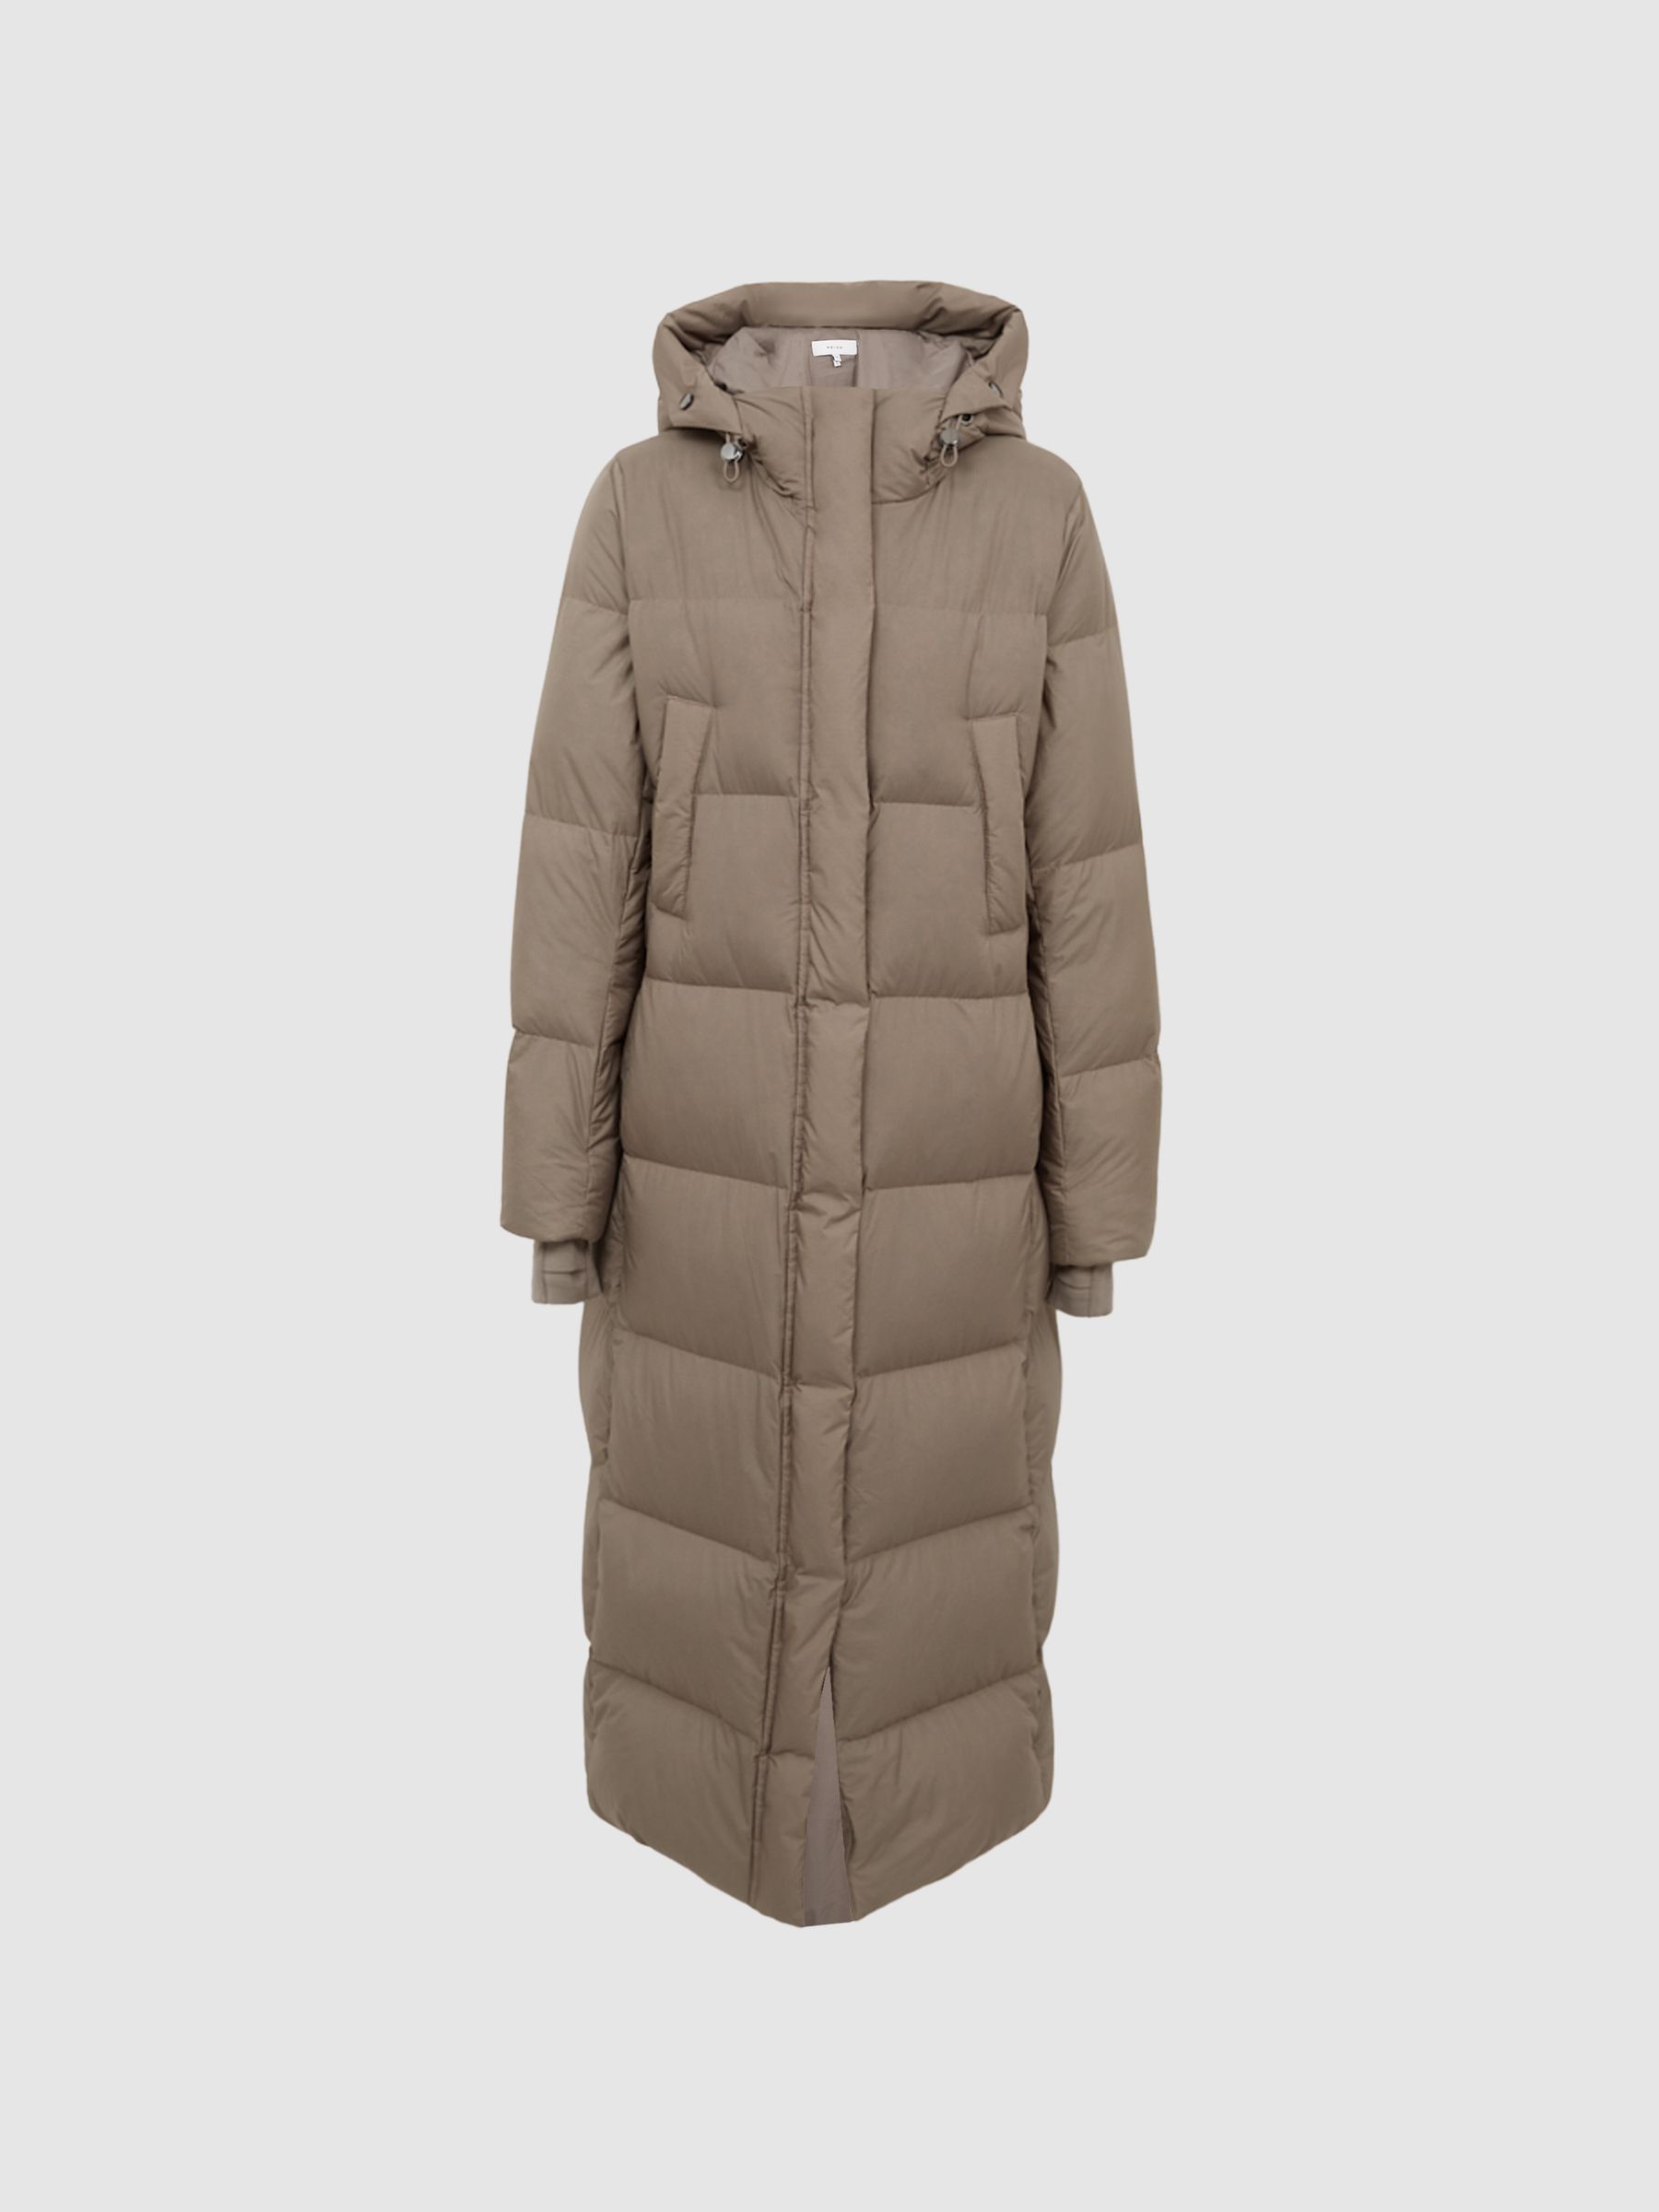 Reiss Tilde Longline Hooded Puffer Coat | REISS Netherlands